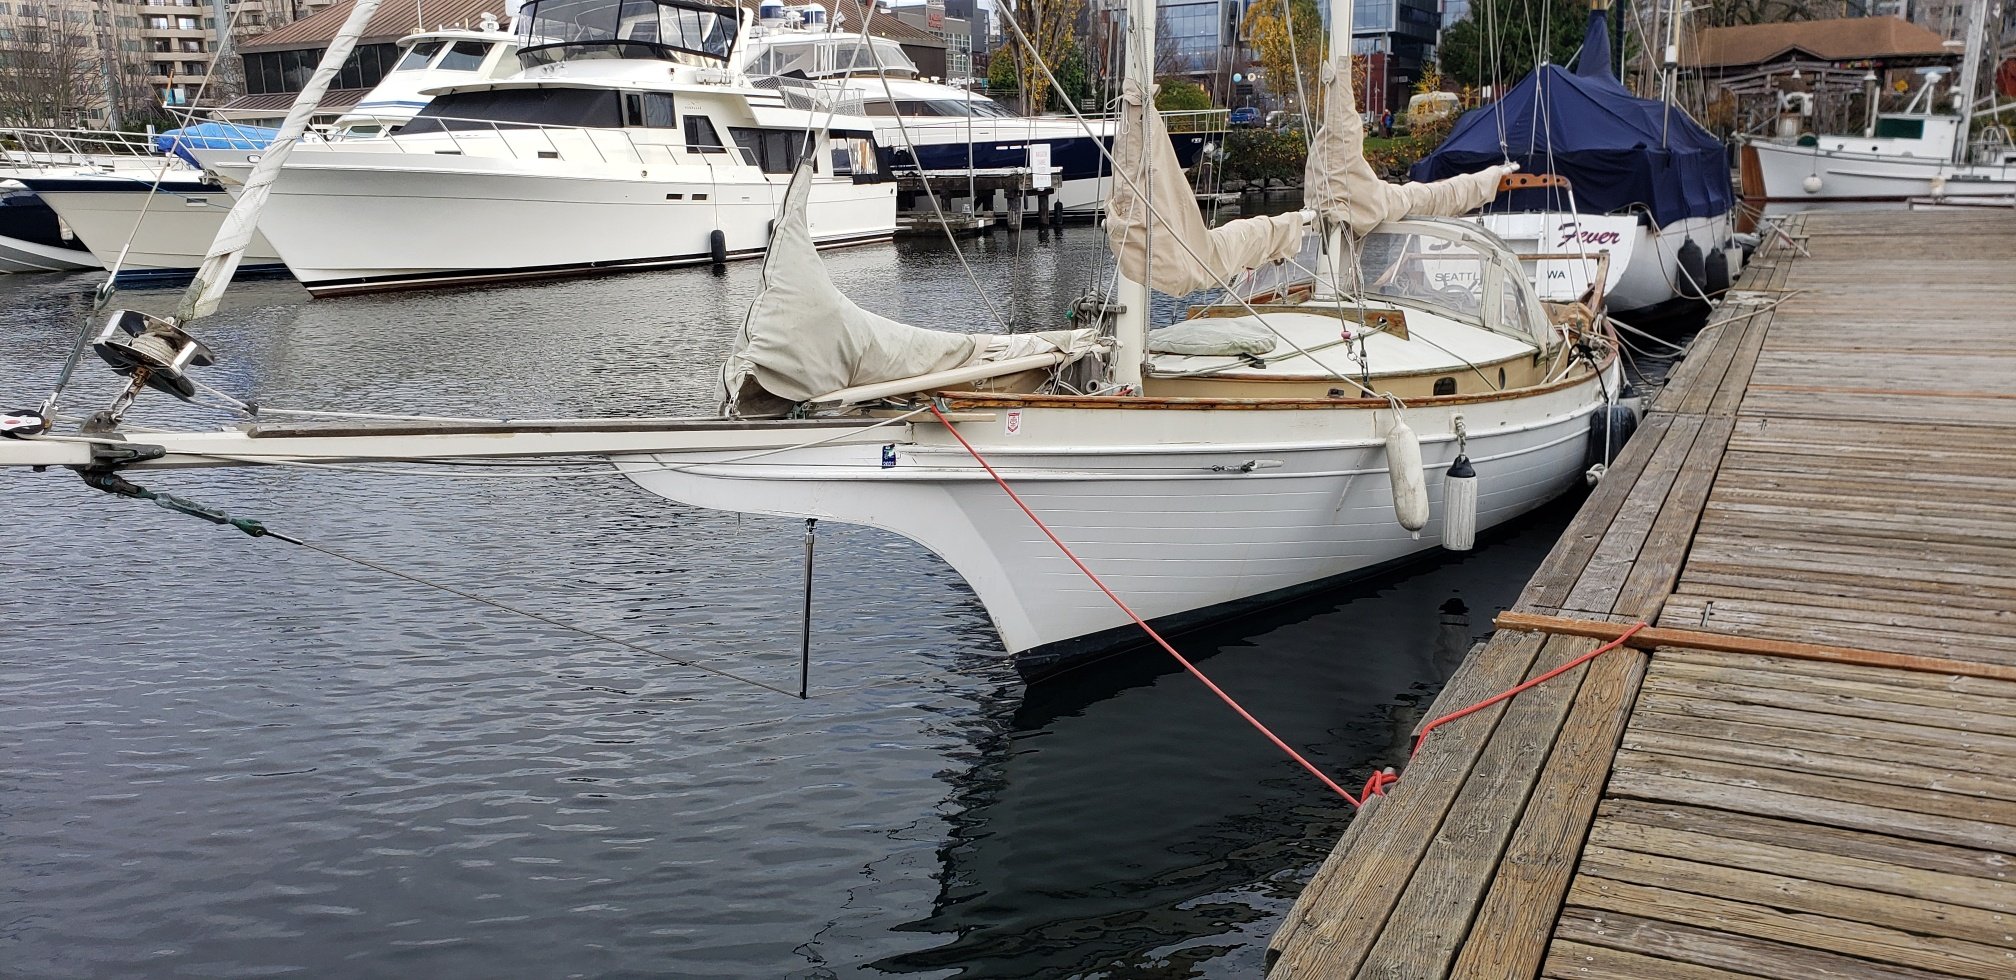 Bill Garden's personal schooner tied to the dock